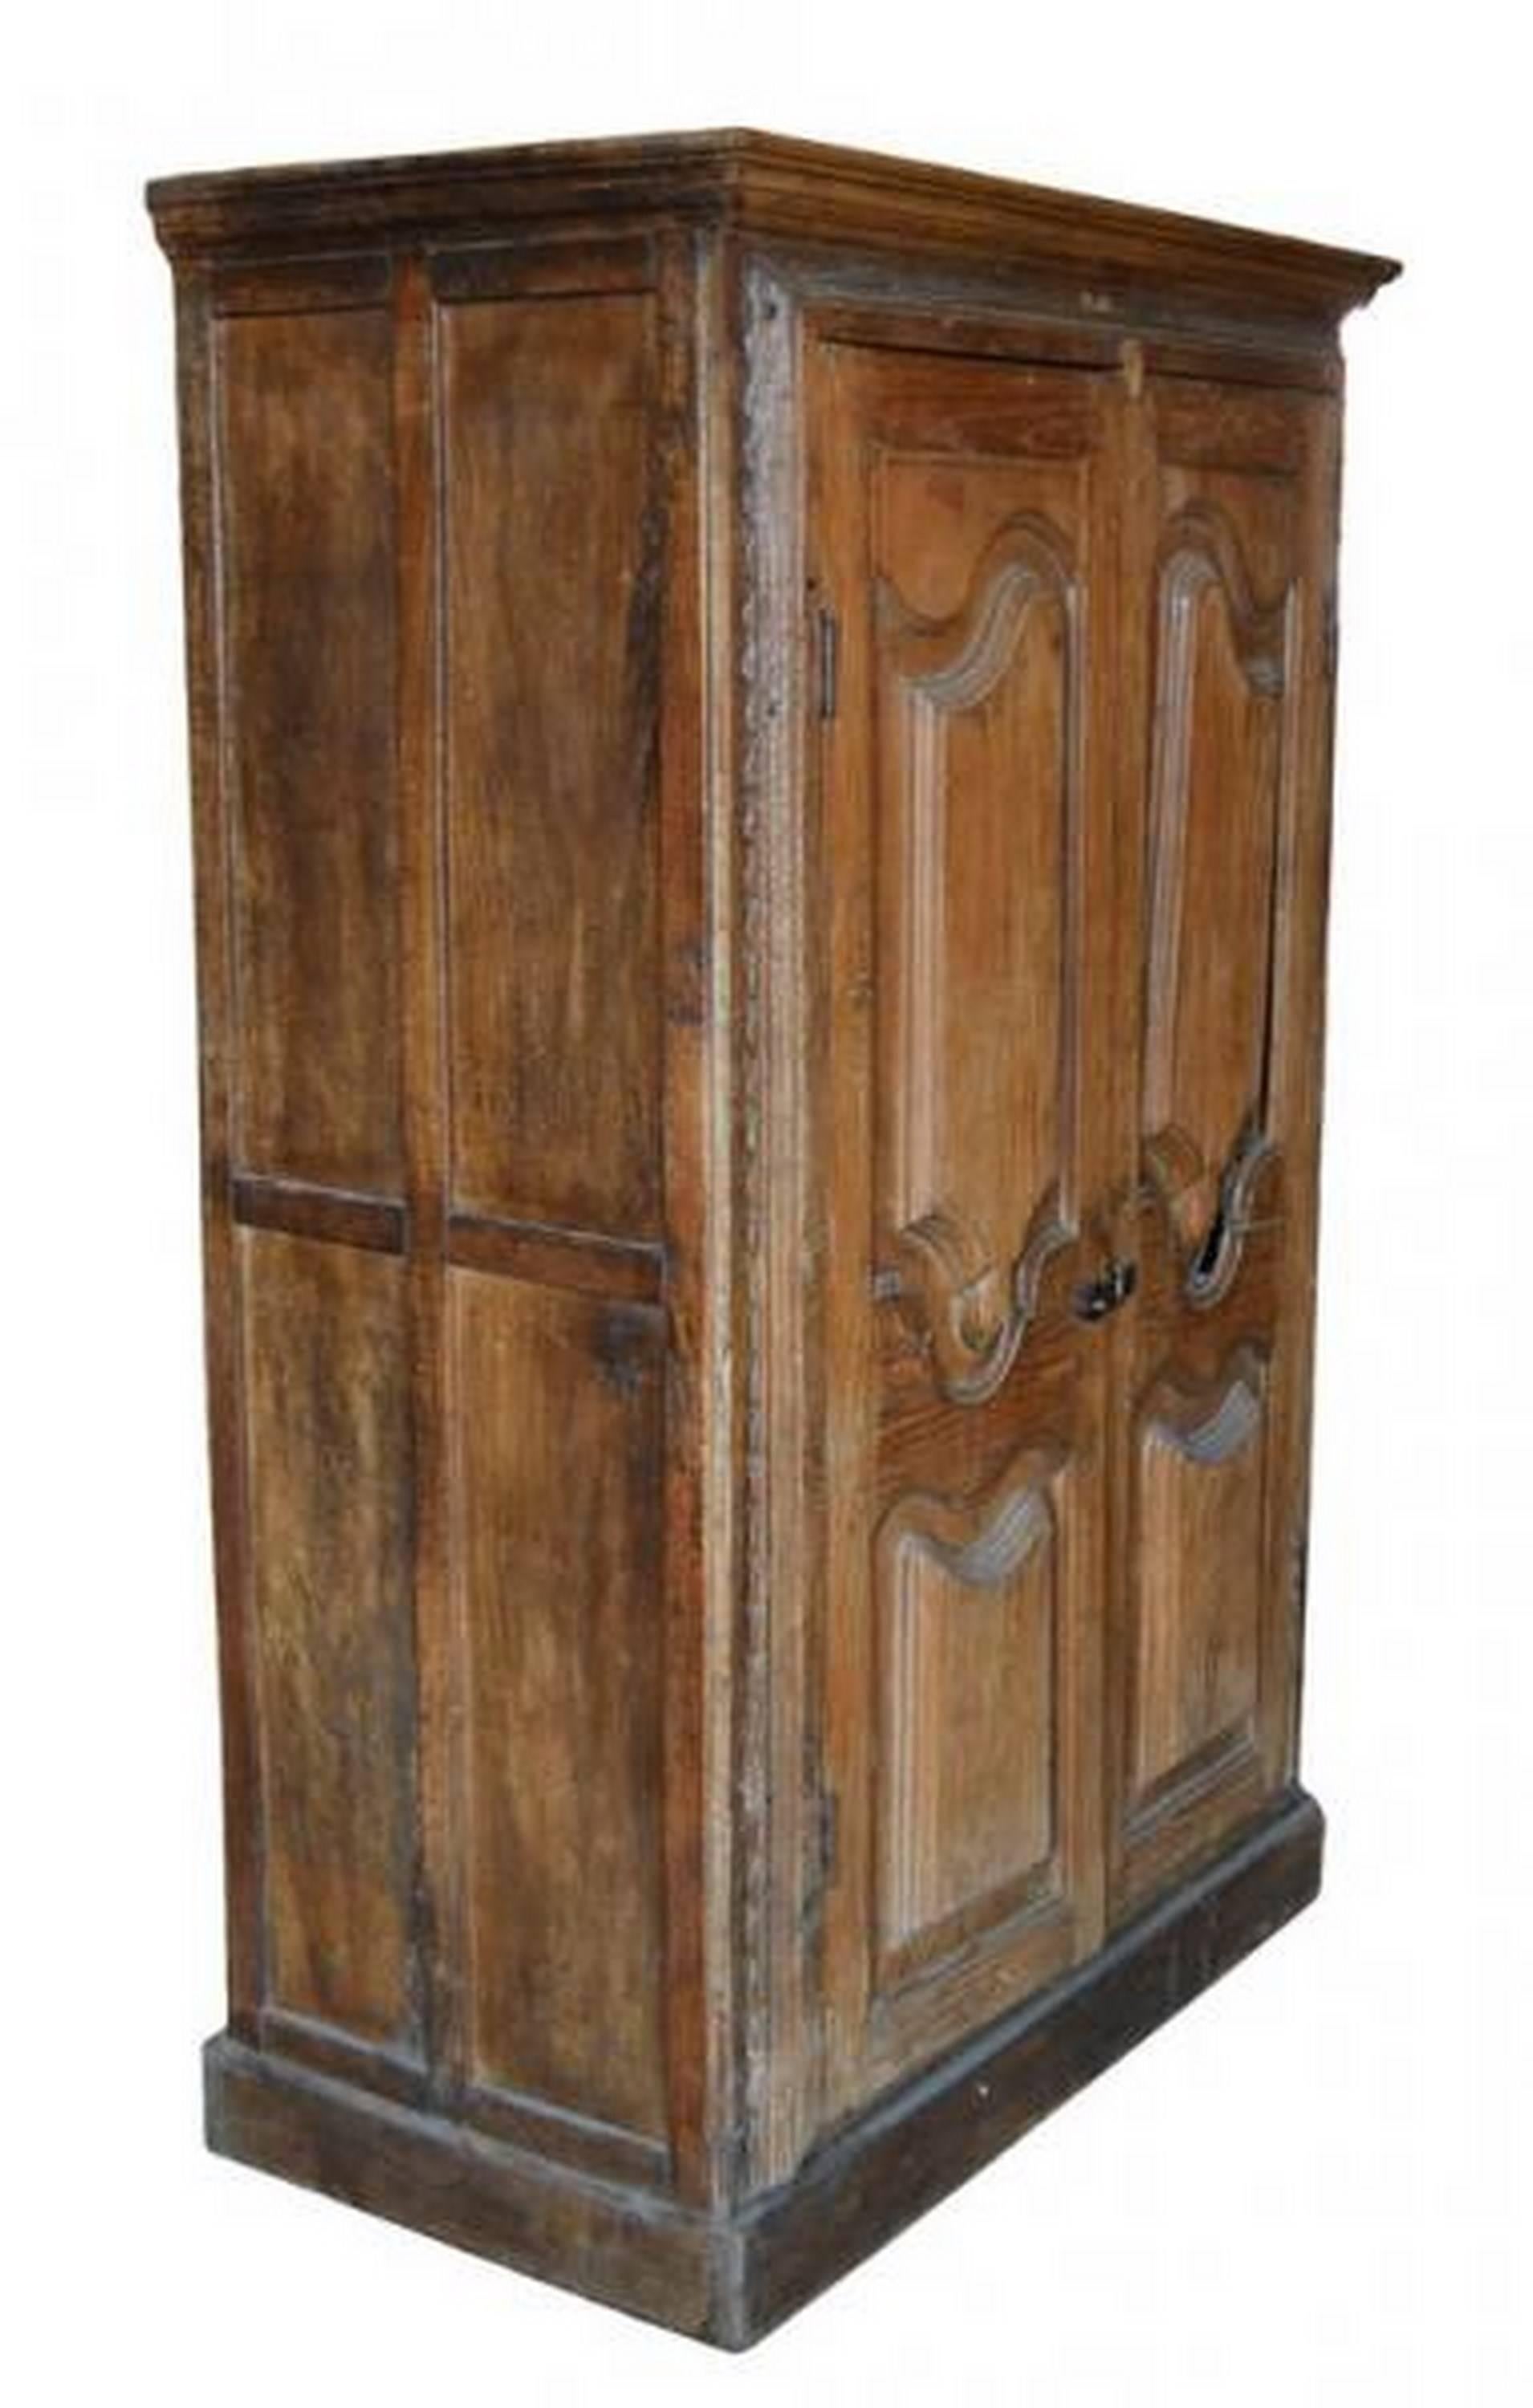 Une grande armoire rustique du 19ème siècle avec des portes sculptées, fabriquée en Inde. Ce meuble haut comporte deux portes surmontées d'une corniche, tandis que la pièce elle-même repose sur une grande plinthe.  Les portes présentent des motifs